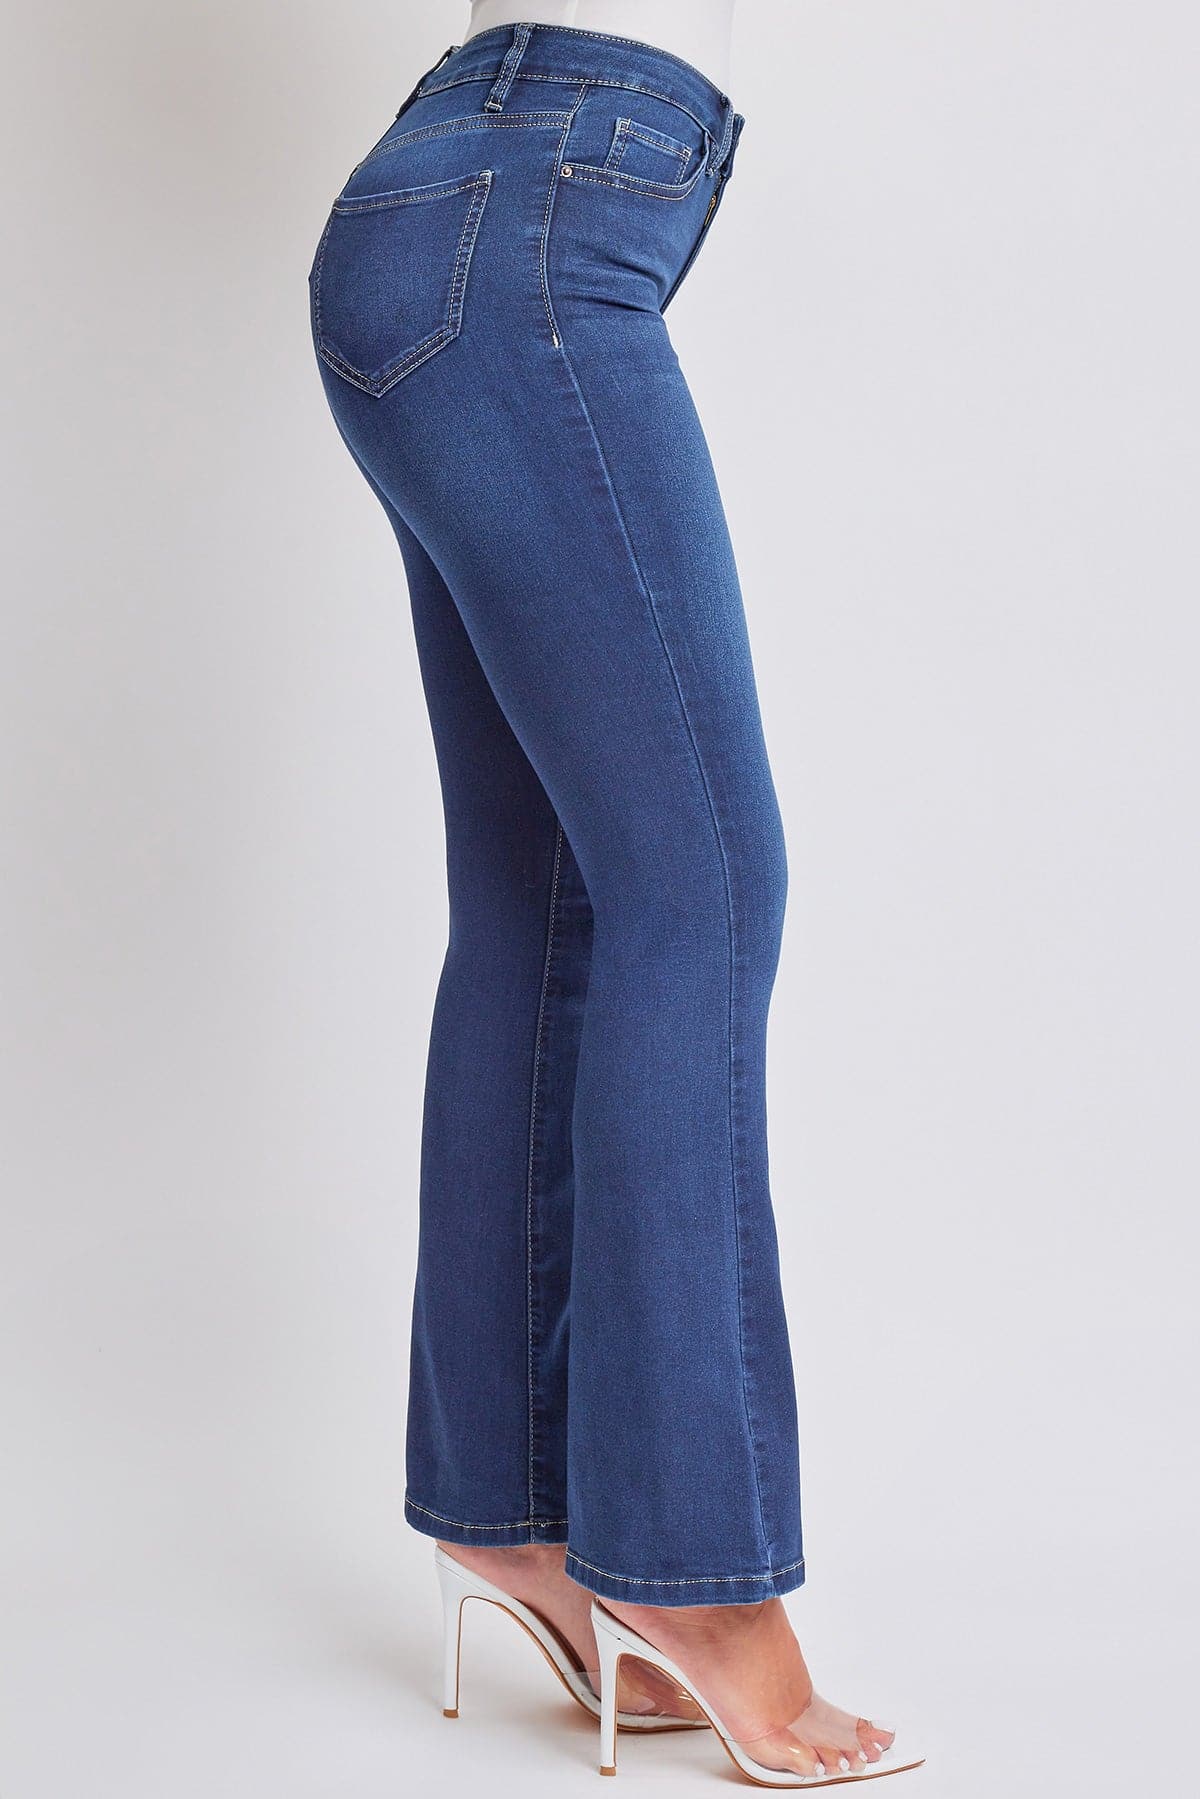 Women's Essential HyperDenim  Flare Jeans With Regular Inseam